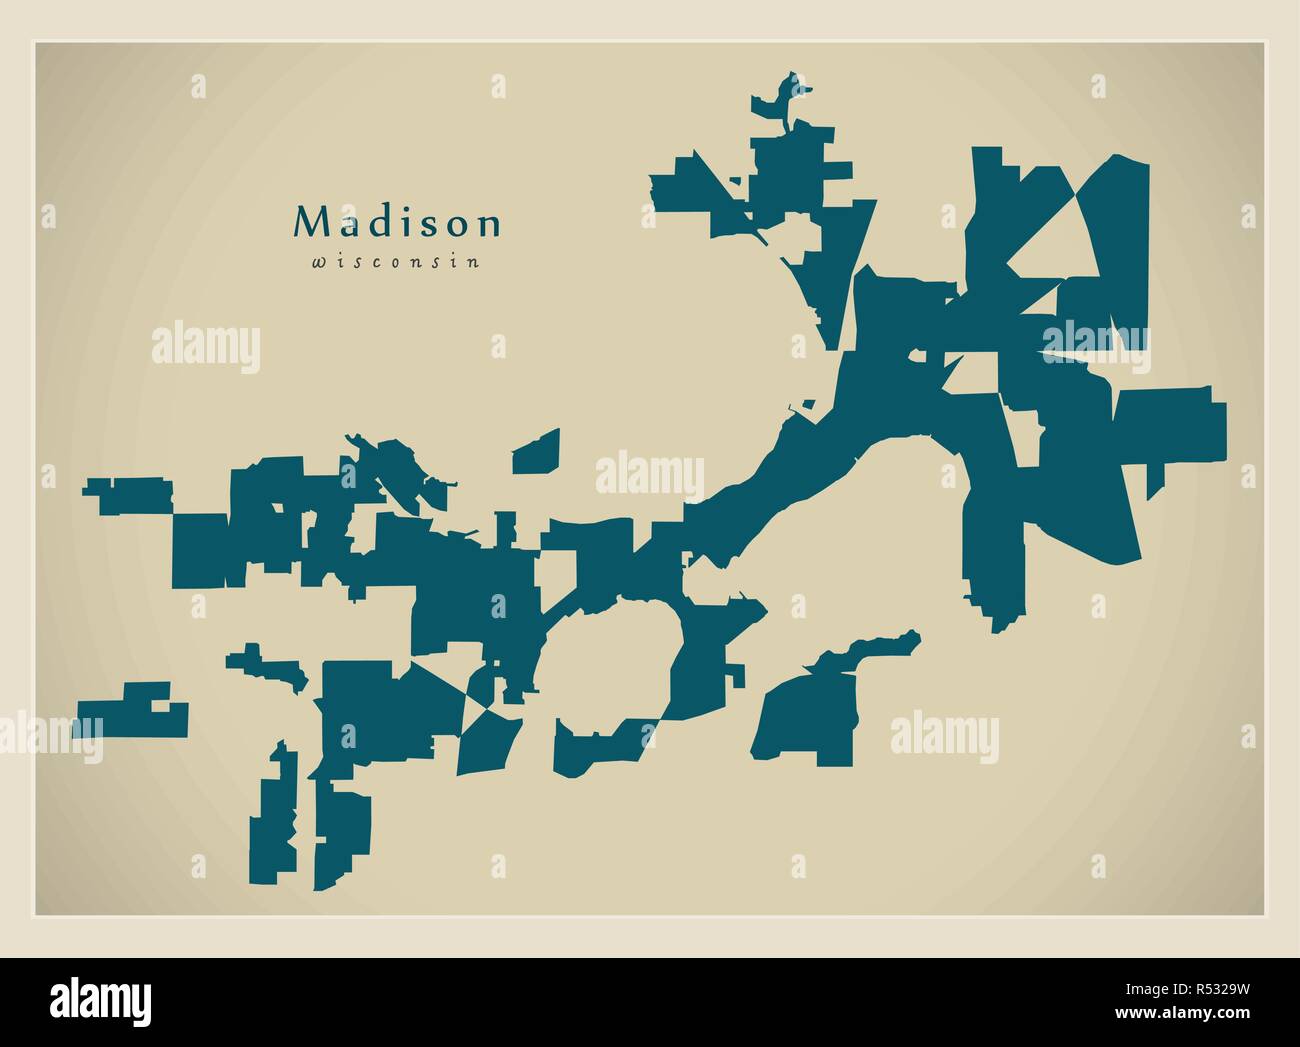 Plan de la ville moderne - ville de Madison, dans le Wisconsin aux USA Illustration de Vecteur